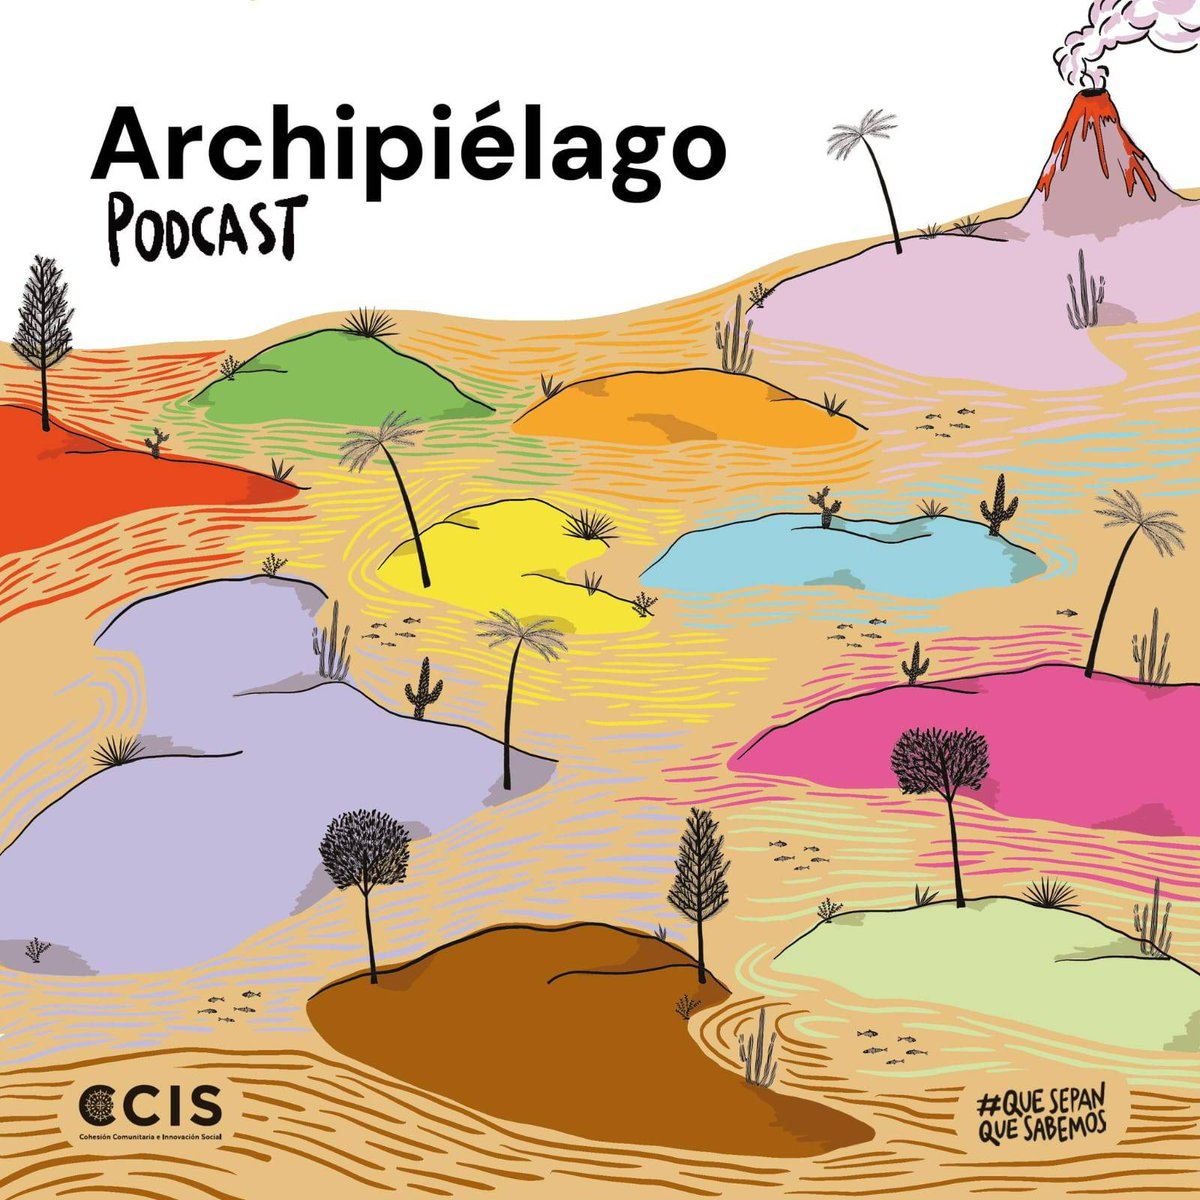 ¡Escucha ya #Archipiélago, un nuevo podcast narrativo sobre la defensa de derechos y territorios ante megaproyectos! Sus protagonistas nos invitan a explorar, imaginar la acción, reconocernos e implicarnos. 🎧Prólogo spoti.fi/40I5YK5